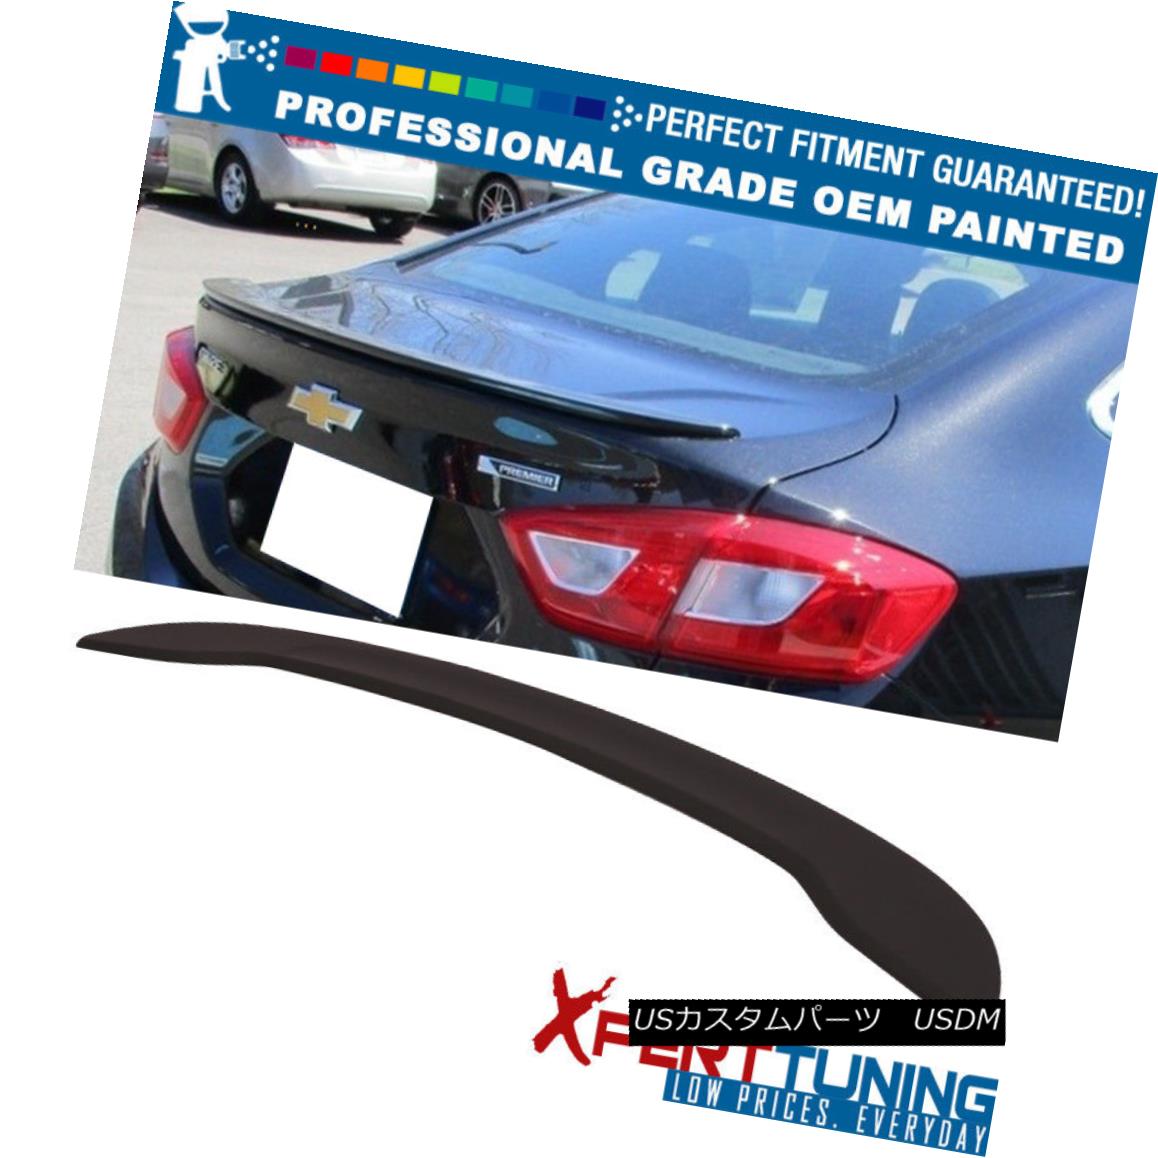 Fits 16-18 Chevy Cruze OE Factory Style Trunk Spoiler Wing - OEM Painted Colorカテゴリエアロパーツ状態新品車種ChevroletメーカーCruze発送詳細送料一律 1000円（※北海道、沖縄、離島は省く）商品詳細輸入商品の為、英語表記となります。 Condition: New Brand: Xpert-Tuning Warranty: Yes Manufacturer Part Number: AST-CCRUZ16OEFM-A&ASK-COLORCODE STYLE: OE Style Interchange Part Number: Plastic Lip OE Part Number 84069483 Details: Instructions are not included Other Part Number: Rear-Trunk-Lip-Spoiler-Wing-Whale-Tail-Add-On Material: ABS Placement on Vehicle: Rear※以下の注意事項をご理解頂いた上で、ご入札下さい※■海外輸入品の為、NC,NRでお願い致します。■フィッテングや車検対応の有無については、画像と説明文よりお客様の方にてご判断をお願いしております。■USのカスタムパーツは国内の純正パーツを取り外した後、接続コネクタが必ずしも一致するとは限らず、加工が必要な場合がございます。■商品説明文中に英語にて”保障”に関する記載があっても適応はされませんので、ご理解ください。■初期不良（到着より7日以内）のみ保証対象とします。ただし、取り付け後は、保証対象外とします。■海外倉庫から到着した製品を、再度国内で検品を行い、日本郵便または佐川急便にて発送となります。■お届けまでには、2〜3週間程頂いております。ただし、天候次第で多少遅れが発生する場合もあります。■商品落札後のお客様のご都合によるキャンセルはお断りしておりますが、商品落札金額の30％の手数料をいただいた場合のみお受けいたします。■他にもUSパーツを多数出品させて頂いておりますので、ご覧頂けたらと思います。■USパーツの輸入代行も行っておりますので、ショップに掲載されていない商品でもお探しする事が可能です!!お気軽にお問い合わせ下さい。&nbsp;